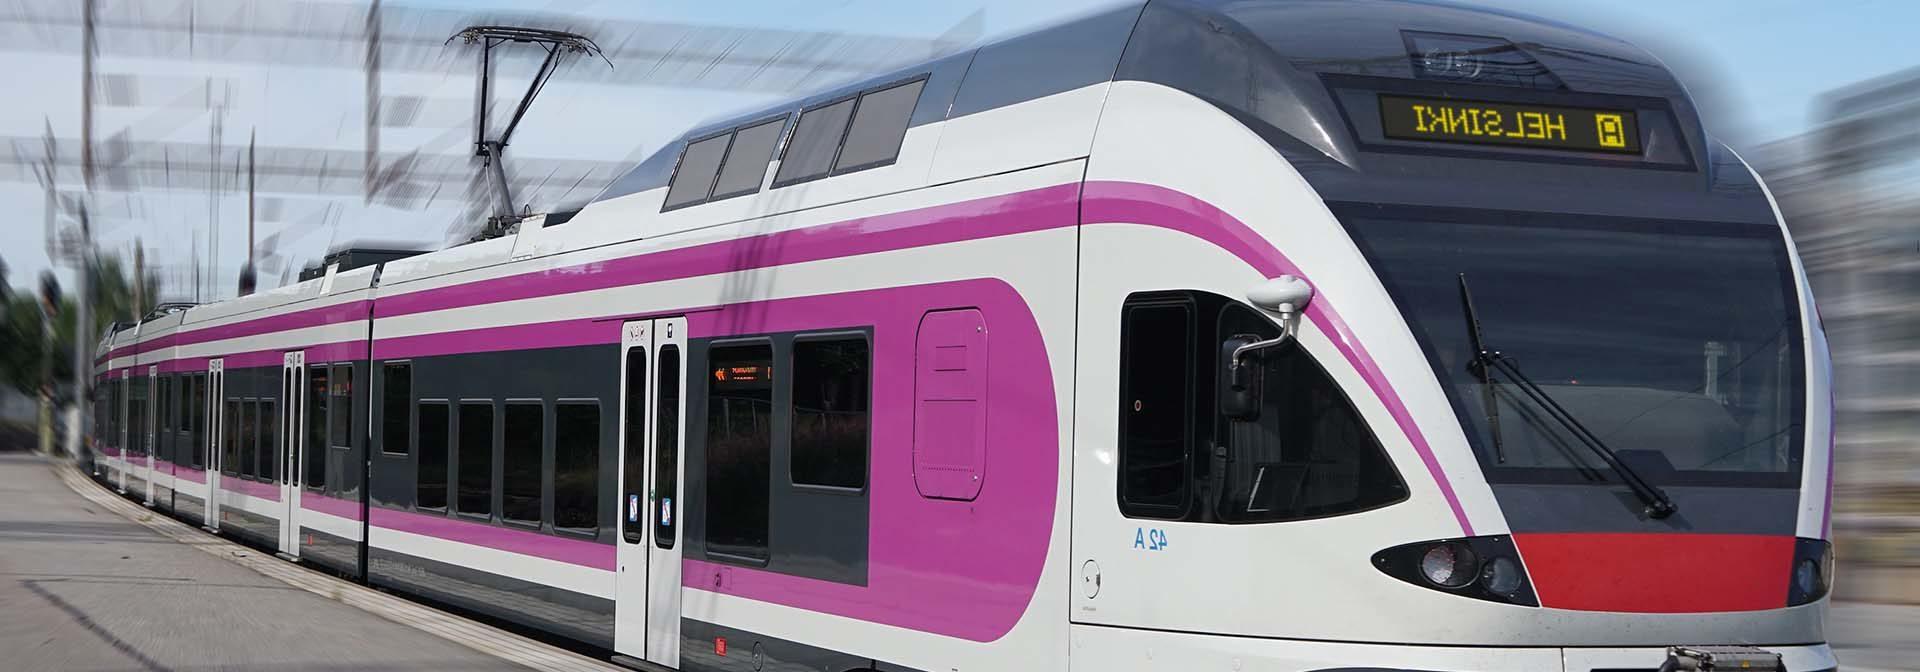 芬兰赫尔辛基Sm5列车的车载系统